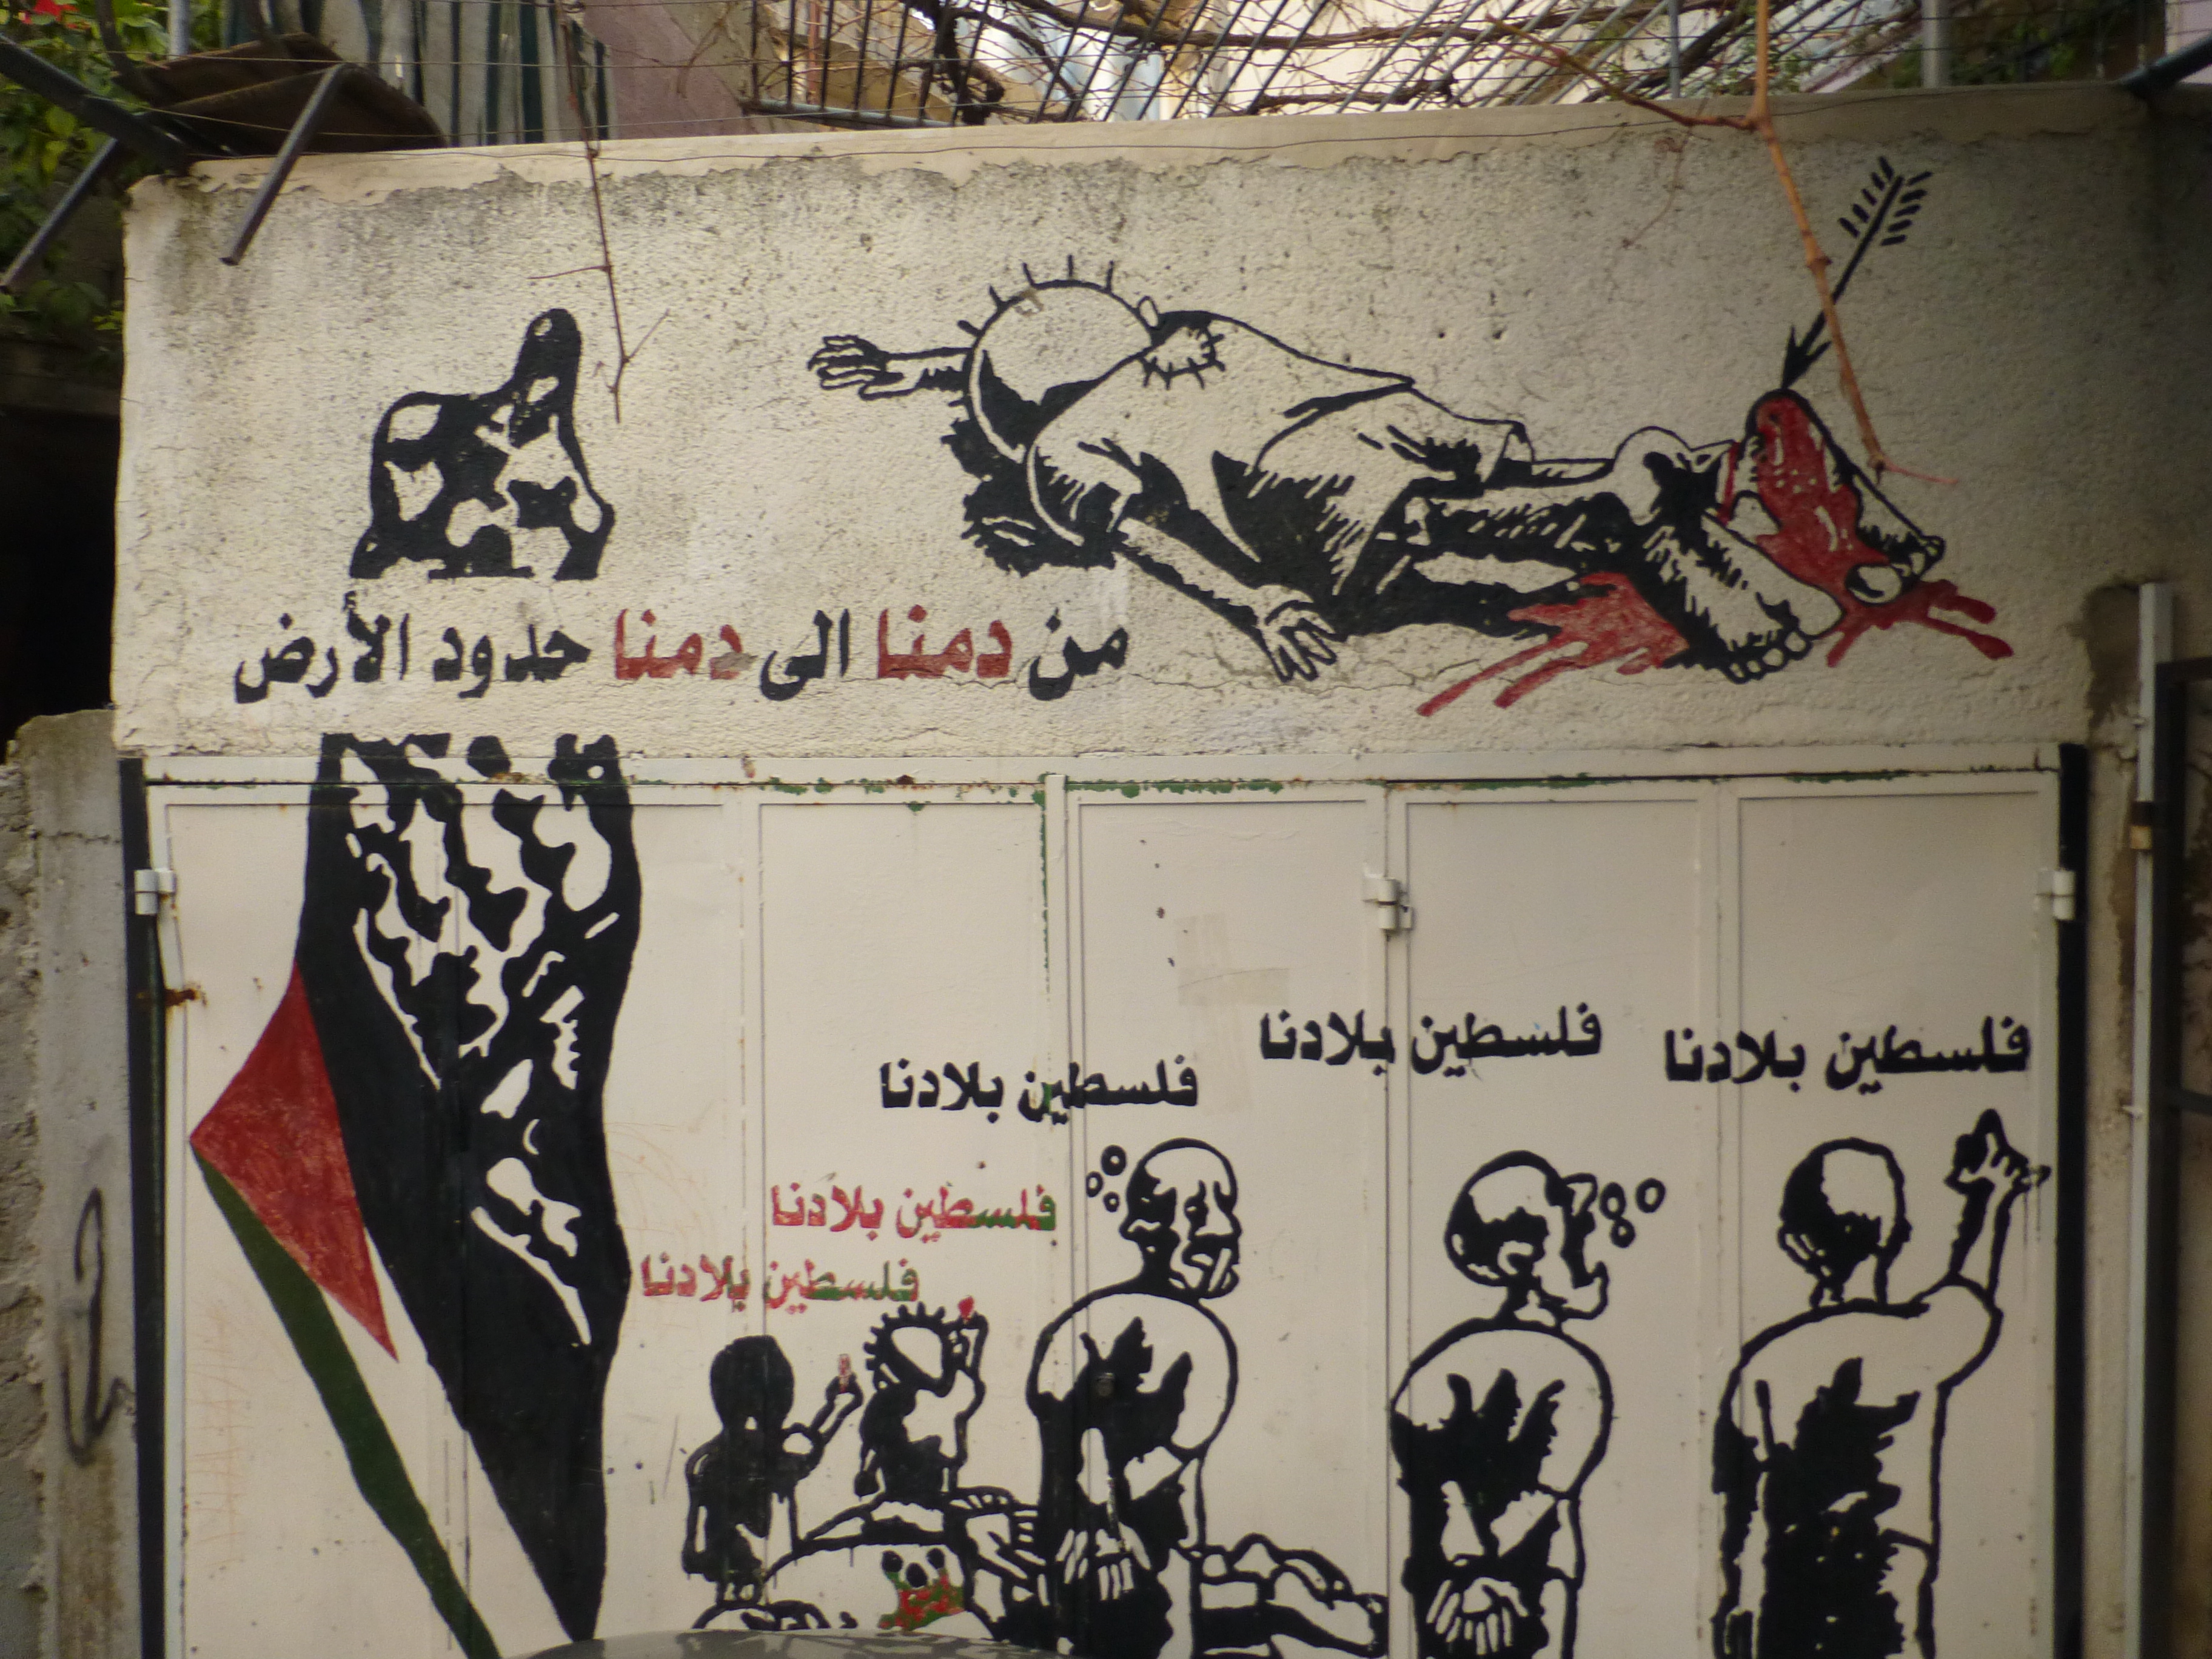 Uno de los diseños de Naji Al-Ali, reproducido en la pared en Deheisheh, mostrando como los palestinos que resisten la ocuación son atados, callados y asesinados.